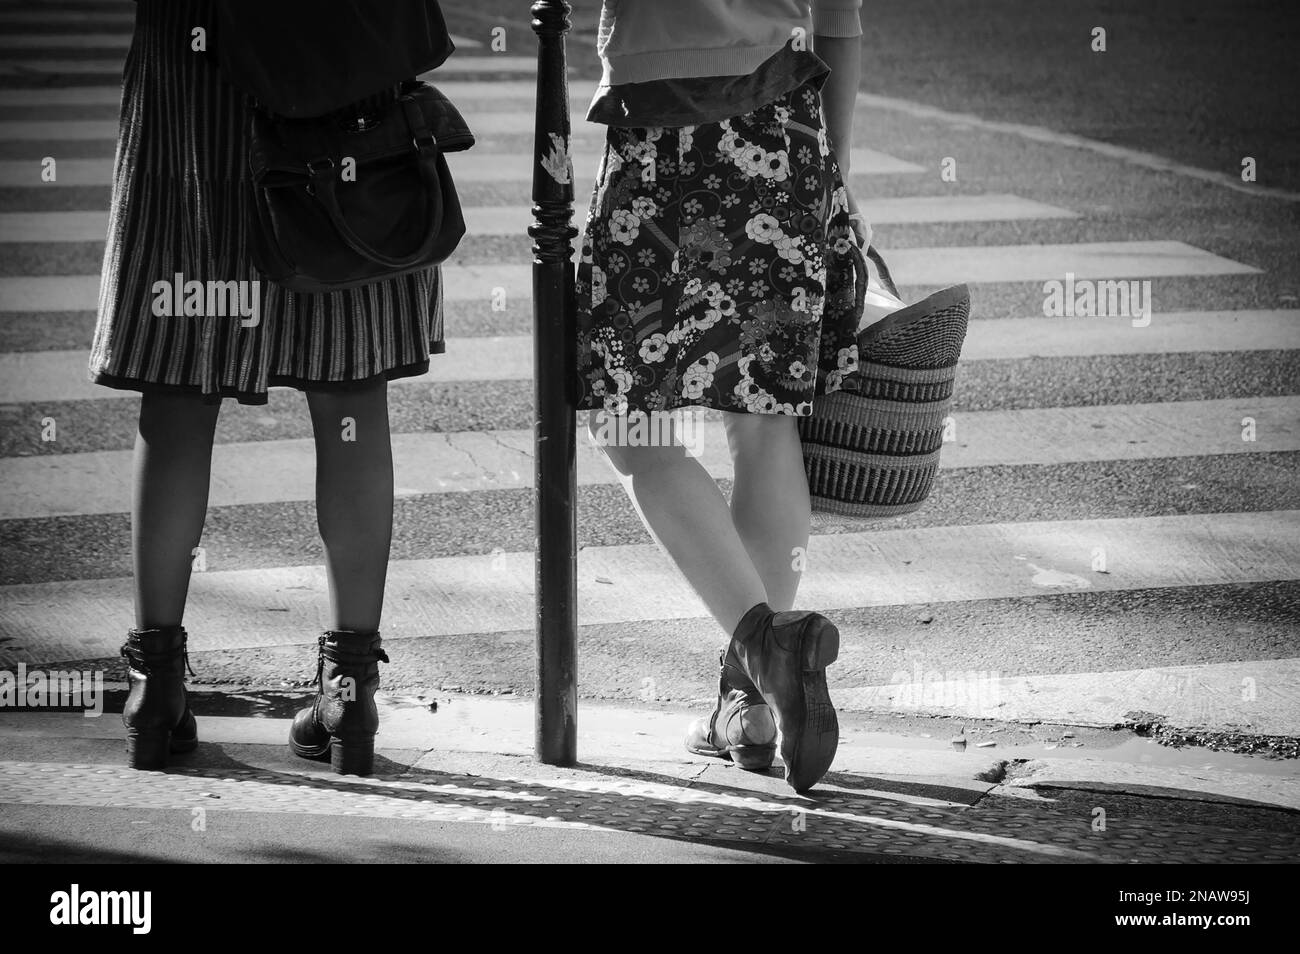 Dos mujeres con faldas esperando cruzar la calle parisina. Amigas pasan tiempo juntas. París, Francia. Estado de ánimo primaveral en el aire. Foto blanco negro Foto de stock